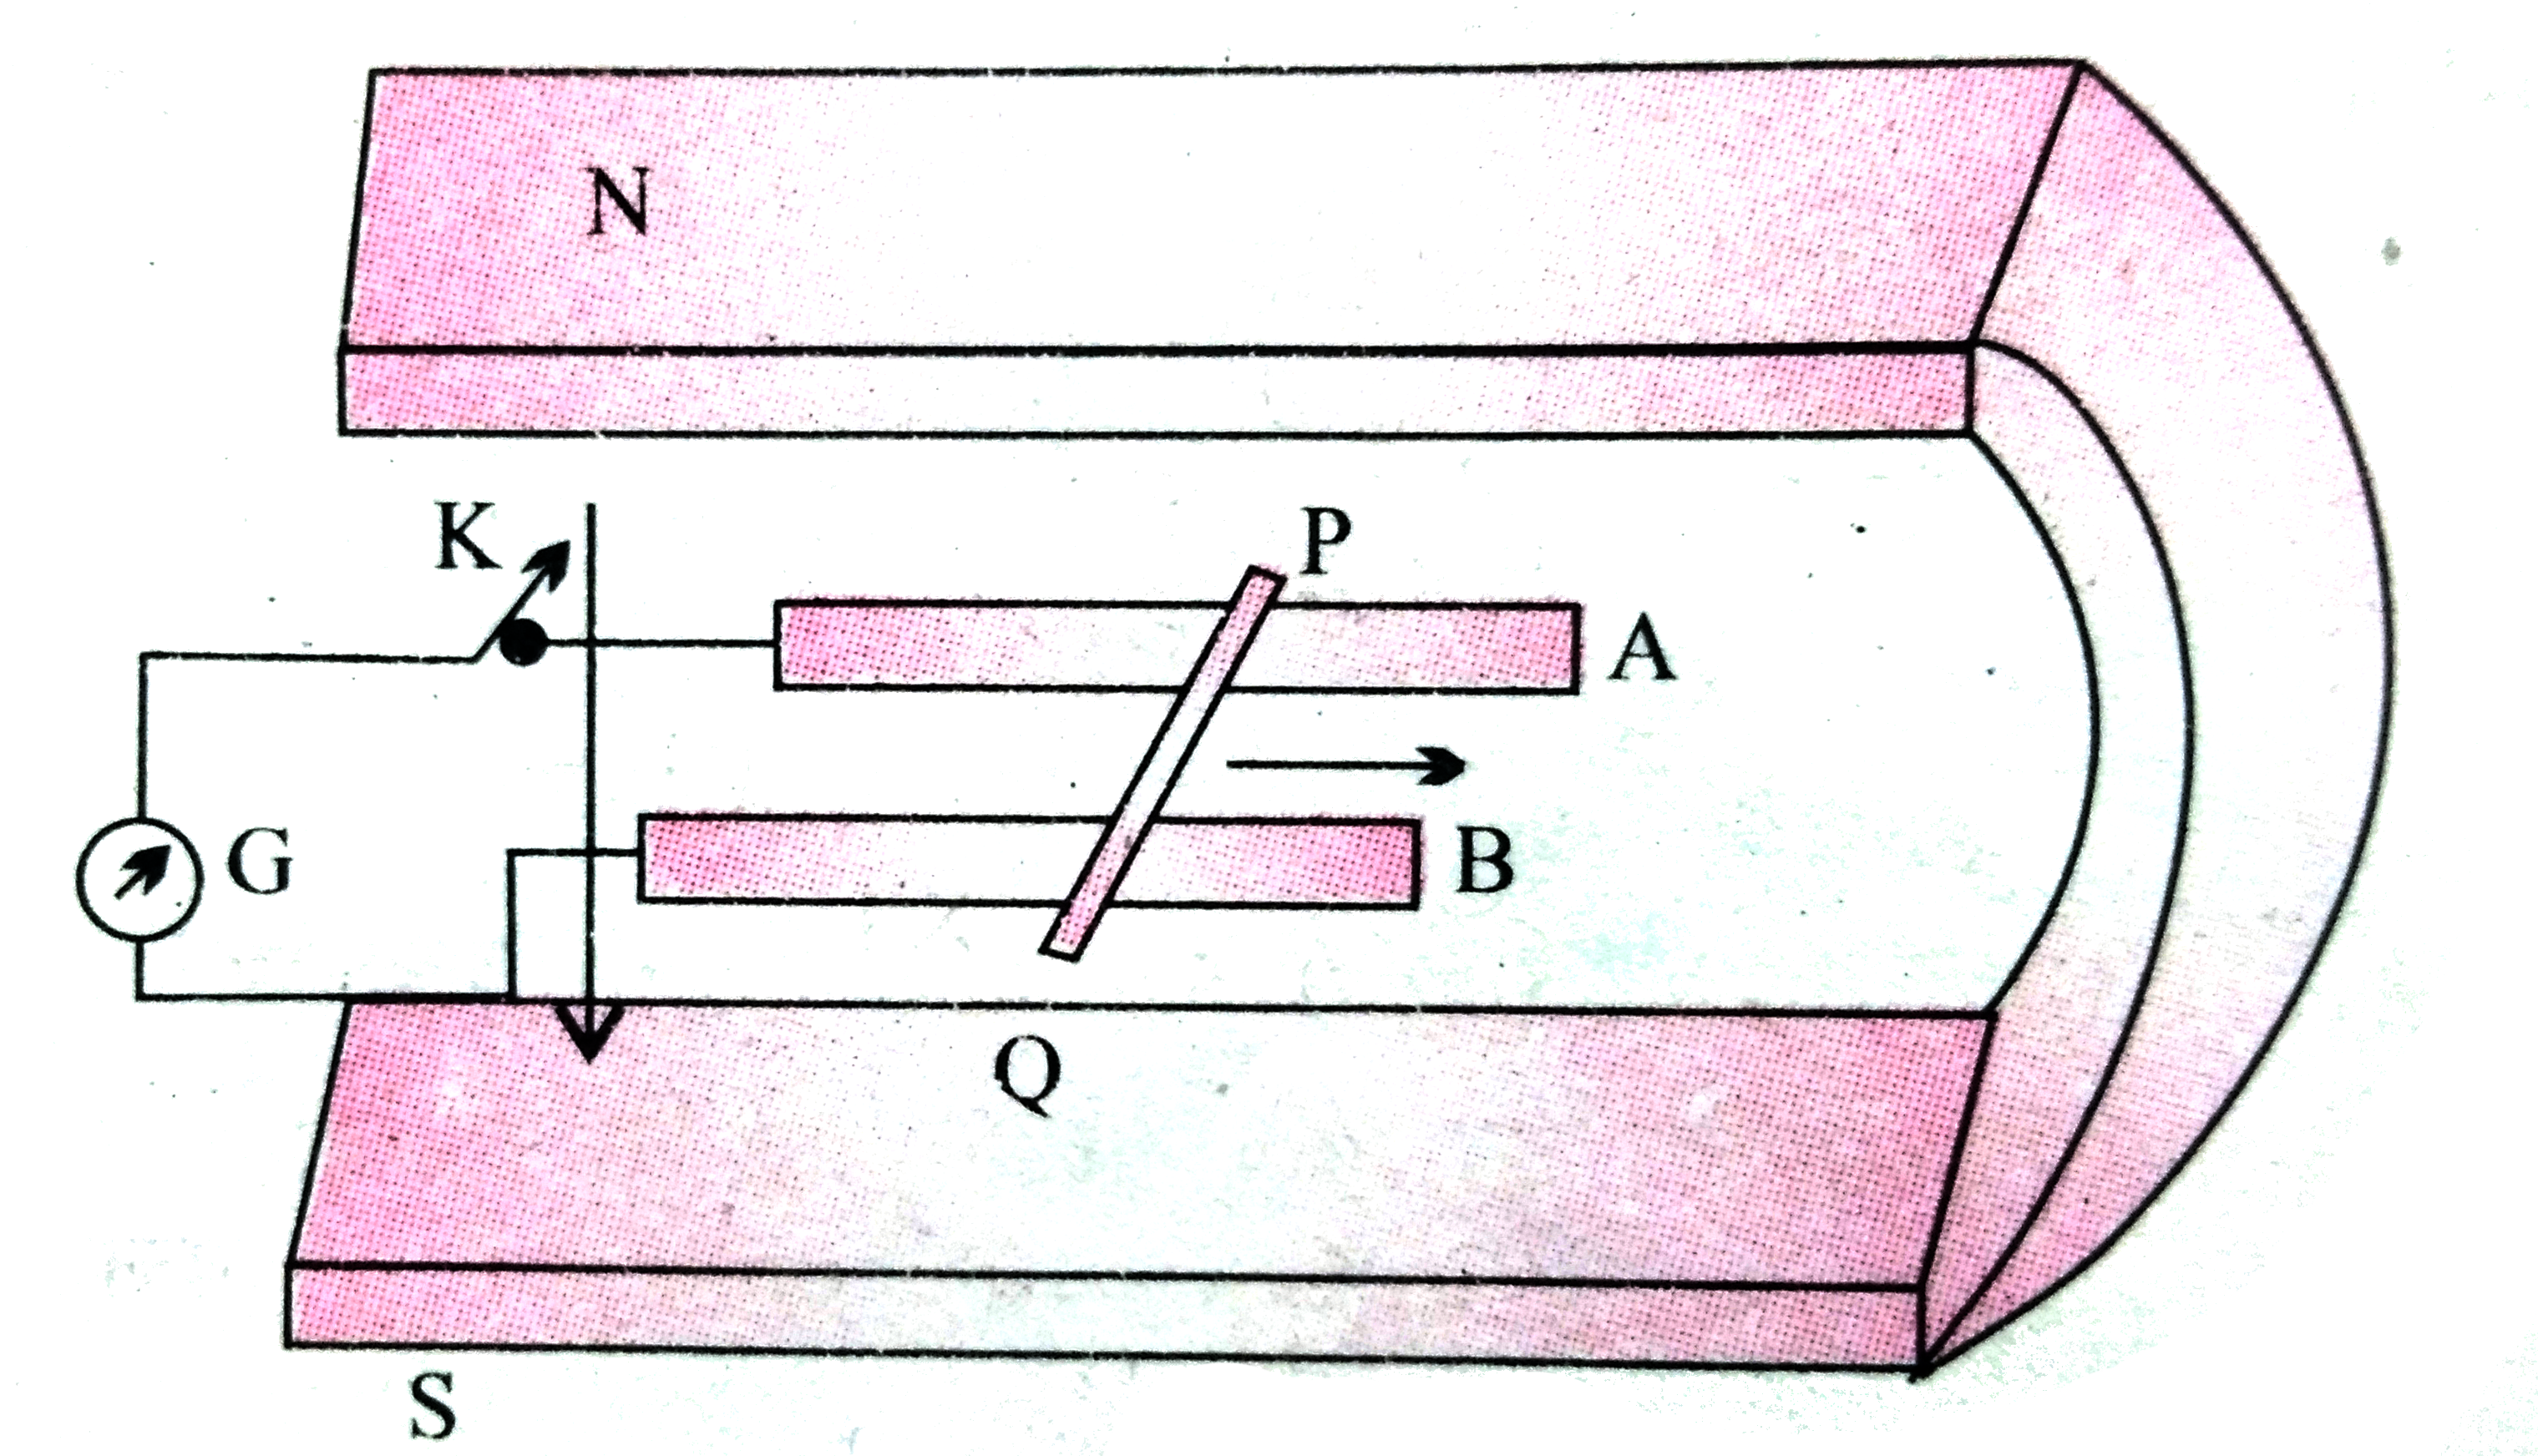 चित्र में एक धातु की  छड़ PQ  को दर्शाया गया है जो पटरियों AB पर रखी है तथा एक स्थायी चुम्बक के ध्रुवो के मध्य स्थित है । पटरियाँ , छड़ एवं चुंबकीय  क्षेत्र परस्पर  अभिलंबवत  दिशाओ में है ।एक गैल्वेनोमीटर ( धारामापी ) G  को पटरियों से एक स्विच K  की सहायता  से संयोजित  किया गया है । छड़ की लम्बाई 15  सेमी , B = 0.50 T  तथा  पटरियों , छड़ धारामापी से बने बंद लूप का प्रतिरोध =  9.0  mOmega   है । क्षेत्र  को एकसमान  मान ले ।    जब कुंजी  K खुली हो तथा  छड़ एकसमान  वेग से गति में तब भी इलेक्ट्रॉनों पर कोई परिणामी  बल कार्य नहीं करता यद्पि  उन पर छड़ की गति के कारण  चुम्बकीय बल कार्य करता है । कारण  स्पष्ट कीजिए ।